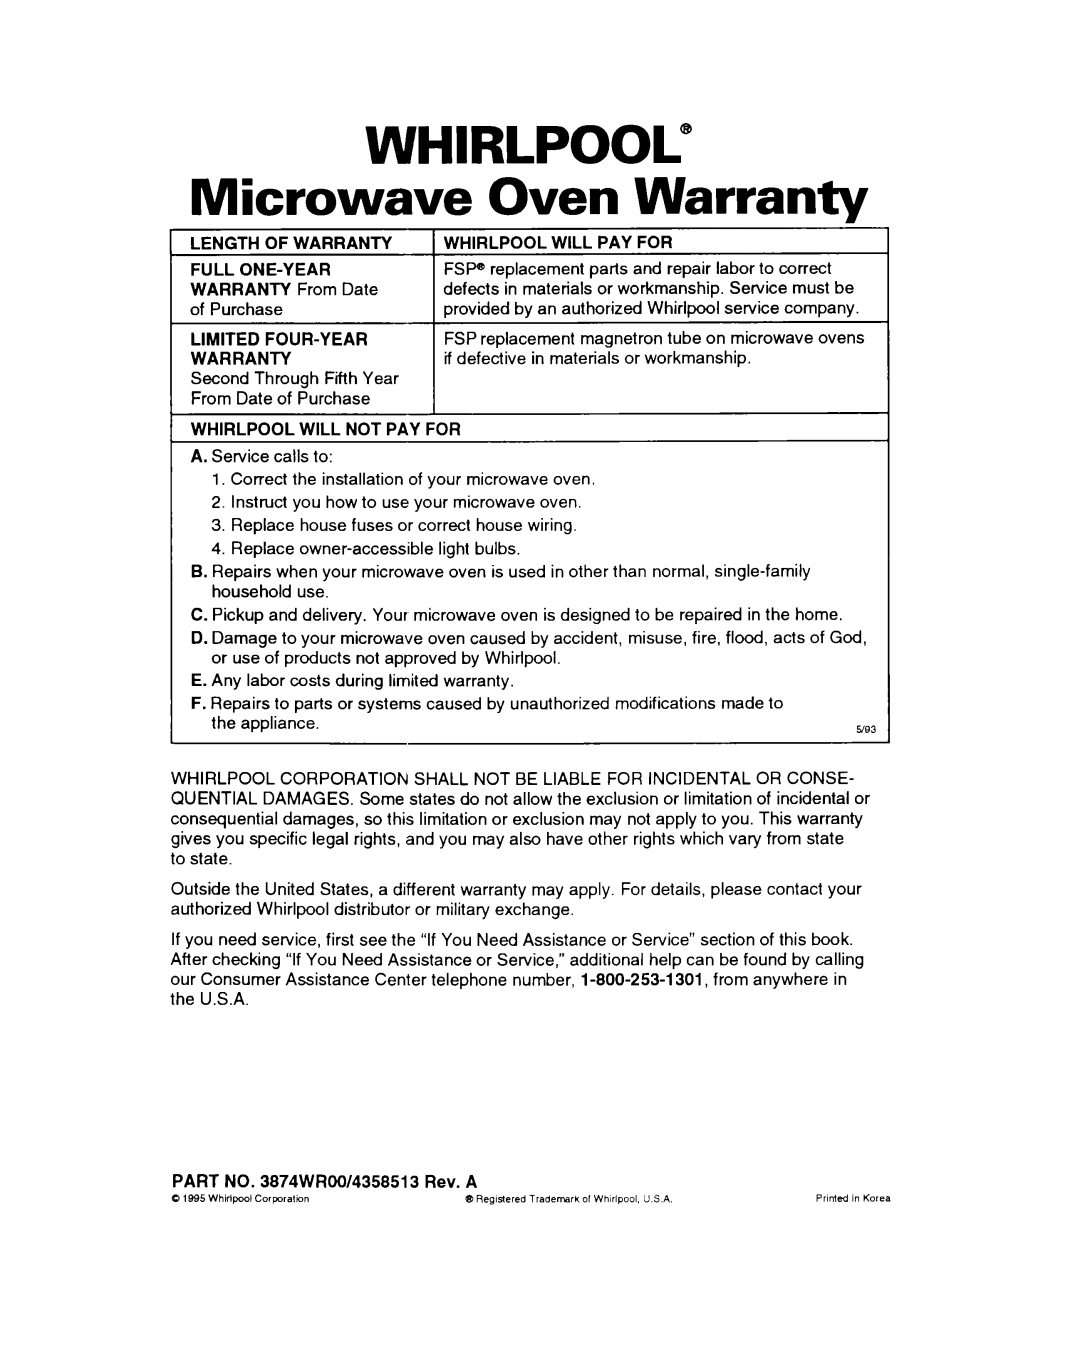 Whirlpool MH7110XB warranty Whirlpool”, Microwave Oven Warranty 